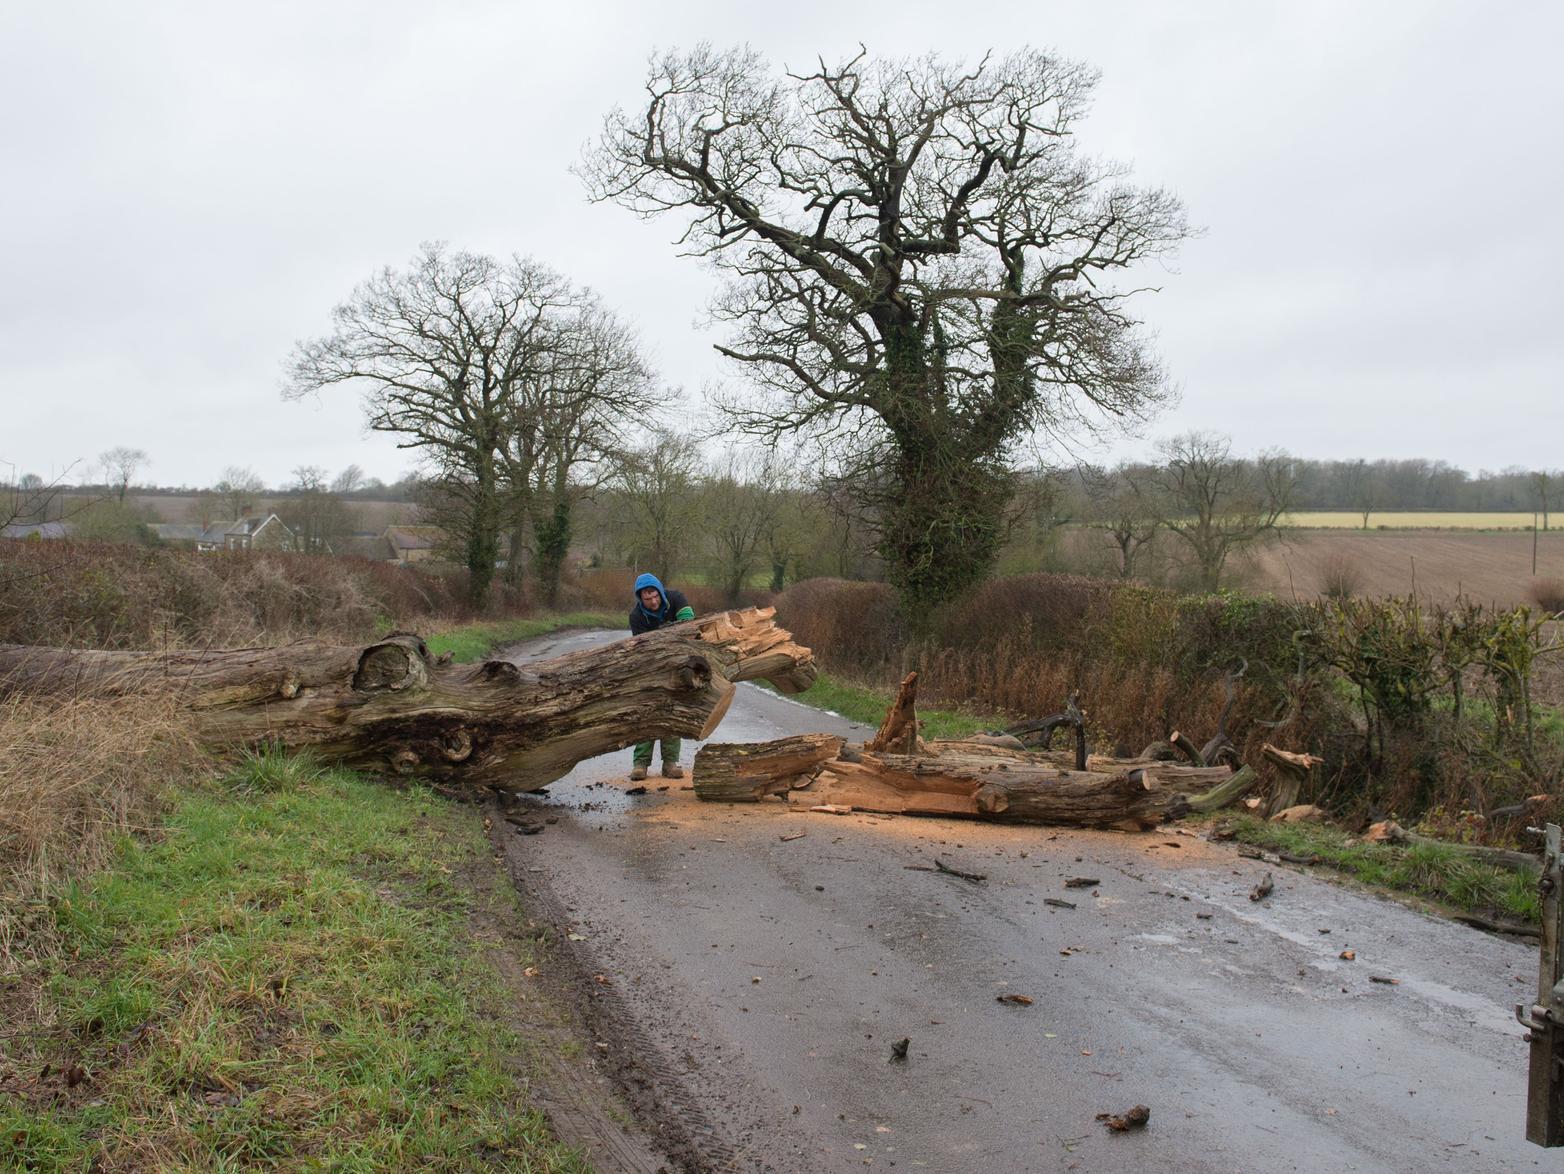 Welsh Lane at Biddlesden near Buckingham was blocked by a fallen tree